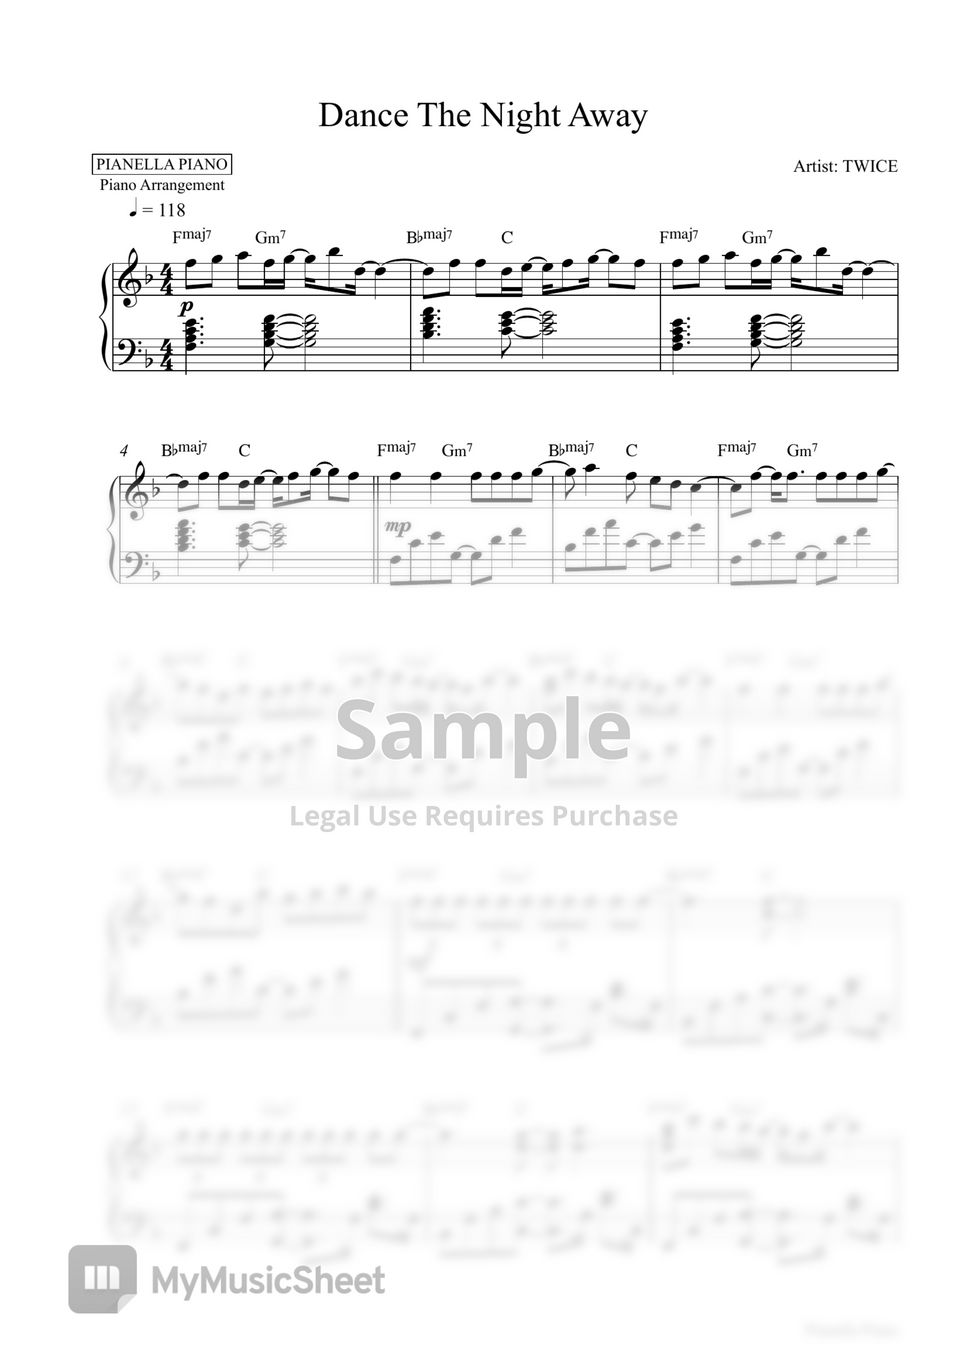 TWICE - Dance The Night Away (Piano Sheet) by Pianella Piano